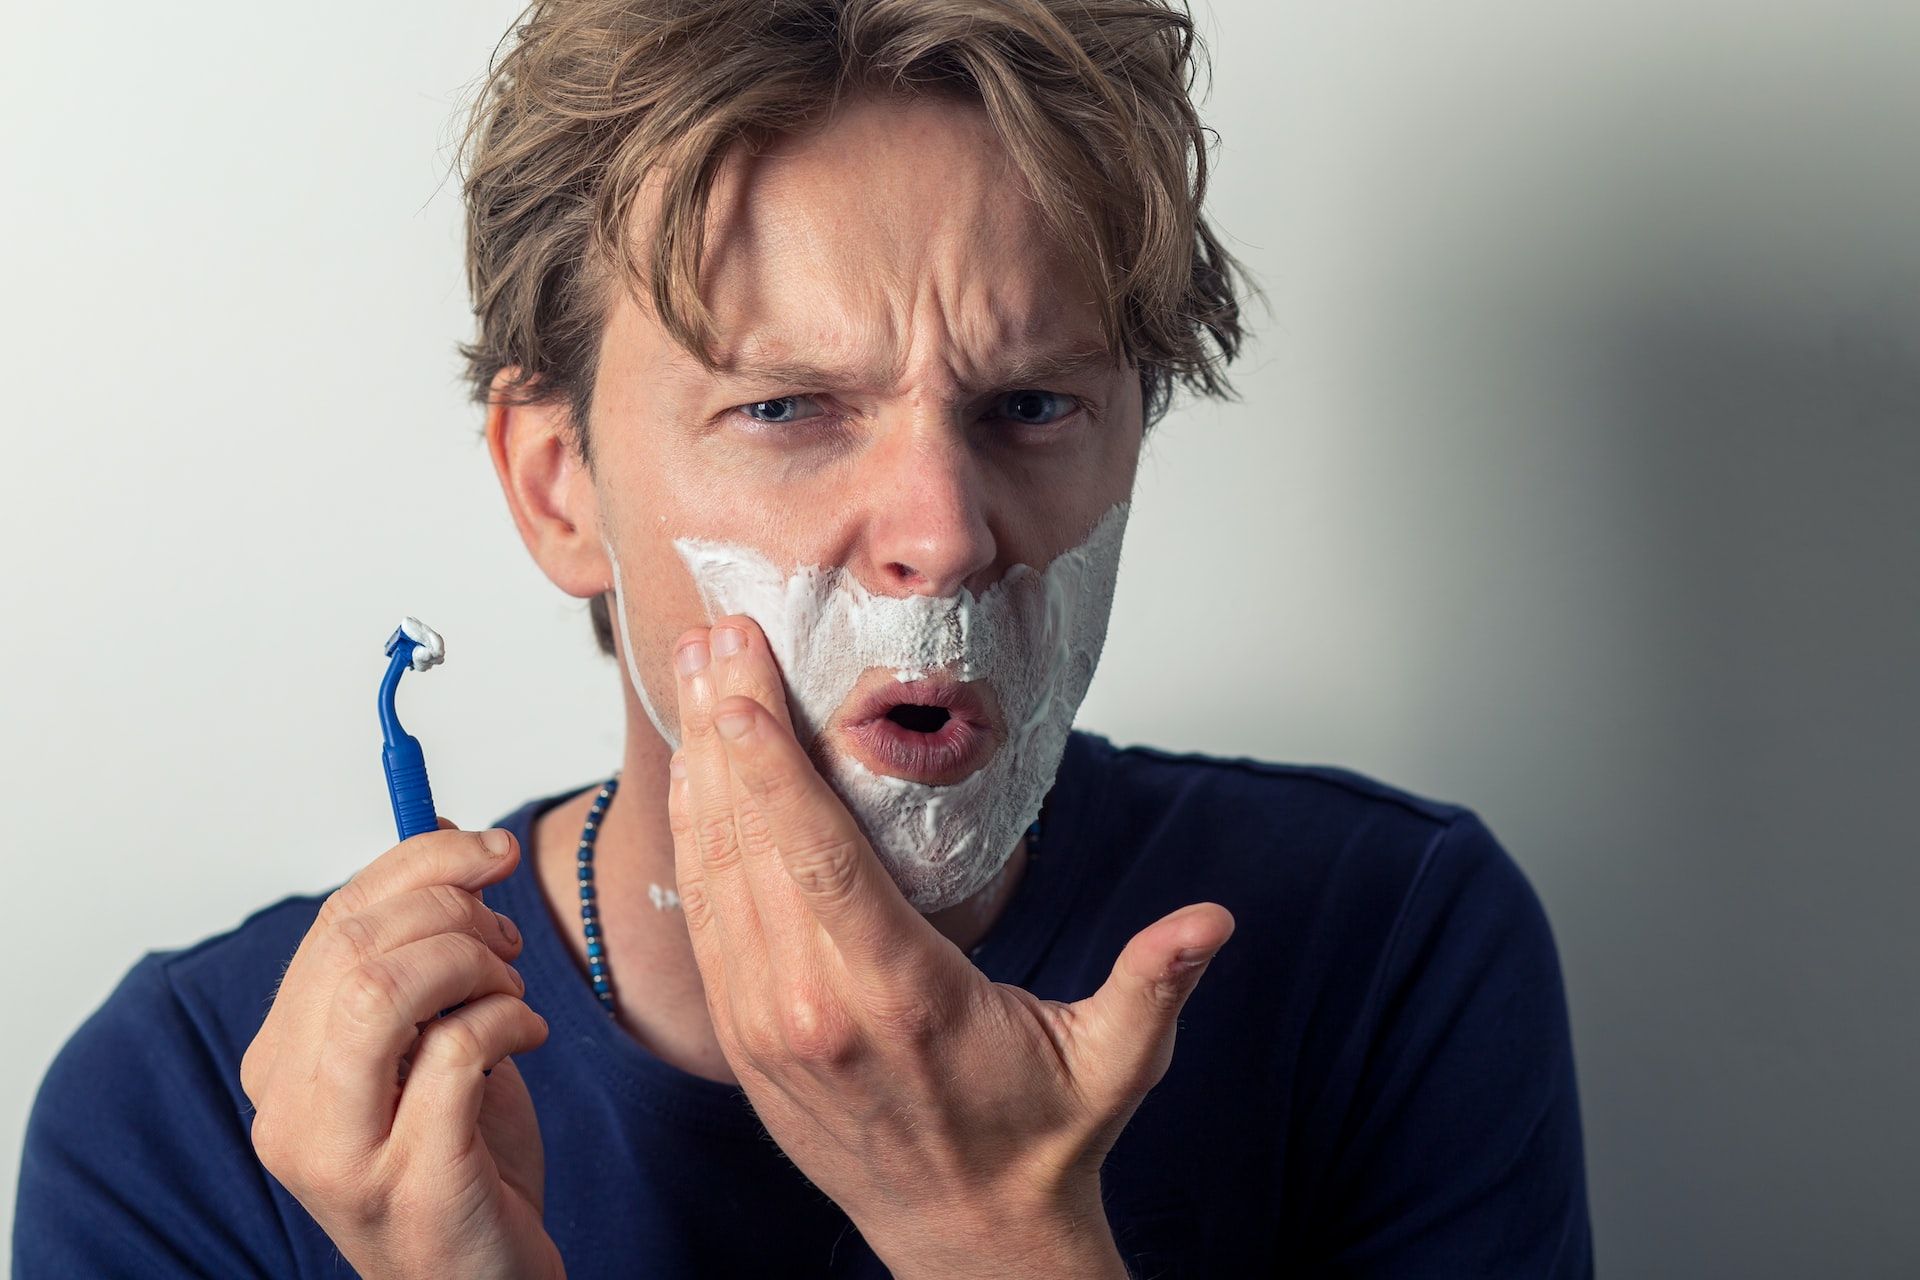 Как ухаживать за бритвой - что нужно делать, чтобы не было раздражения во время бритья